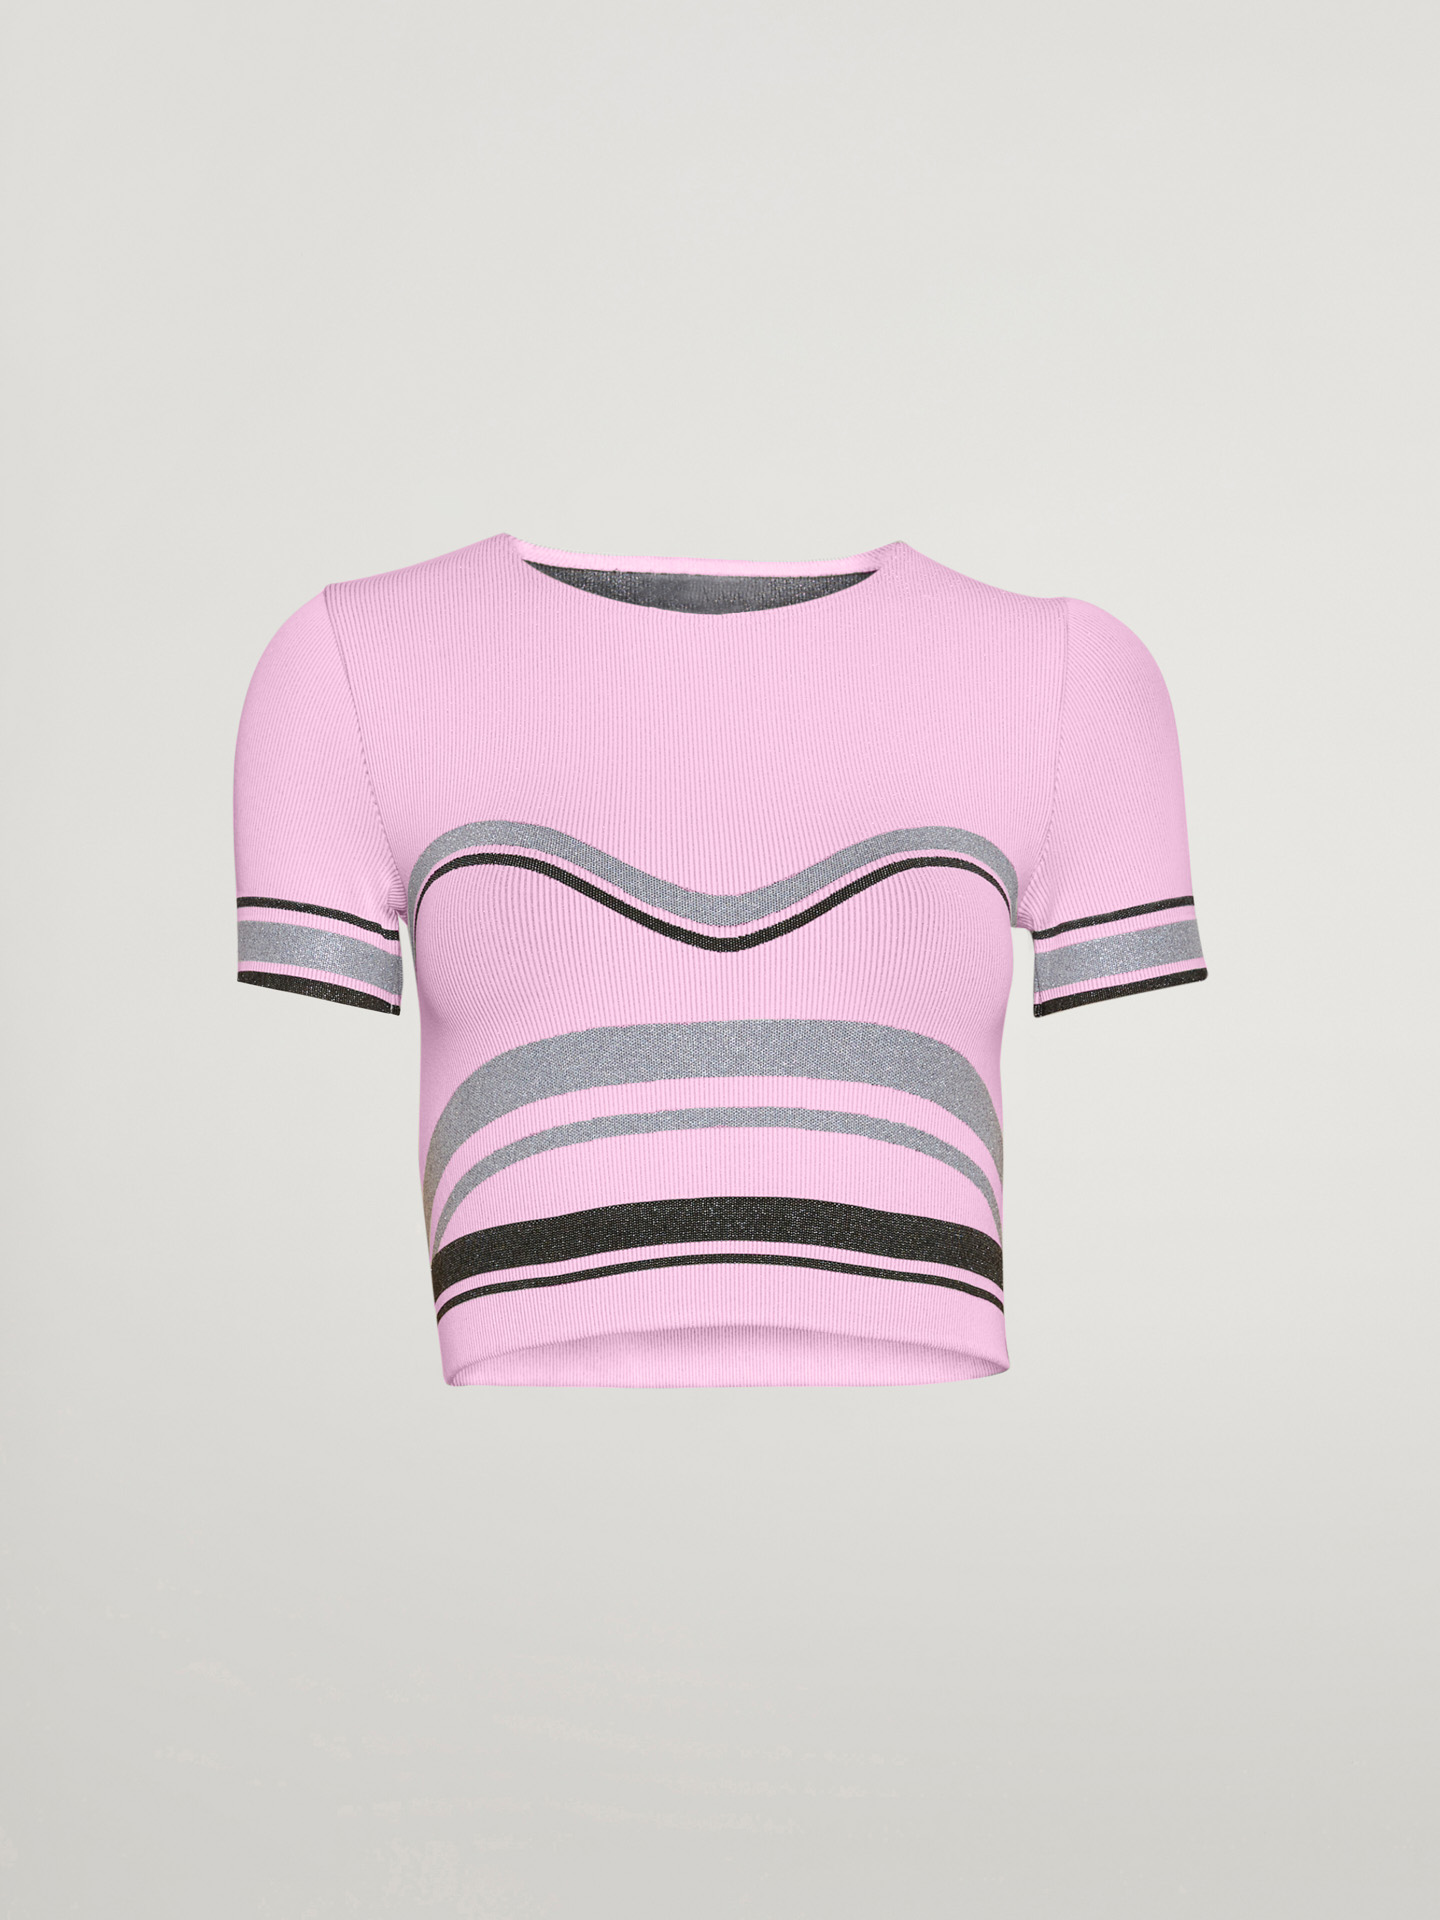 Wolford - Shaping Stripes Crop Top, Frau, prisma pink/silver/black, Größe: M von Wolford